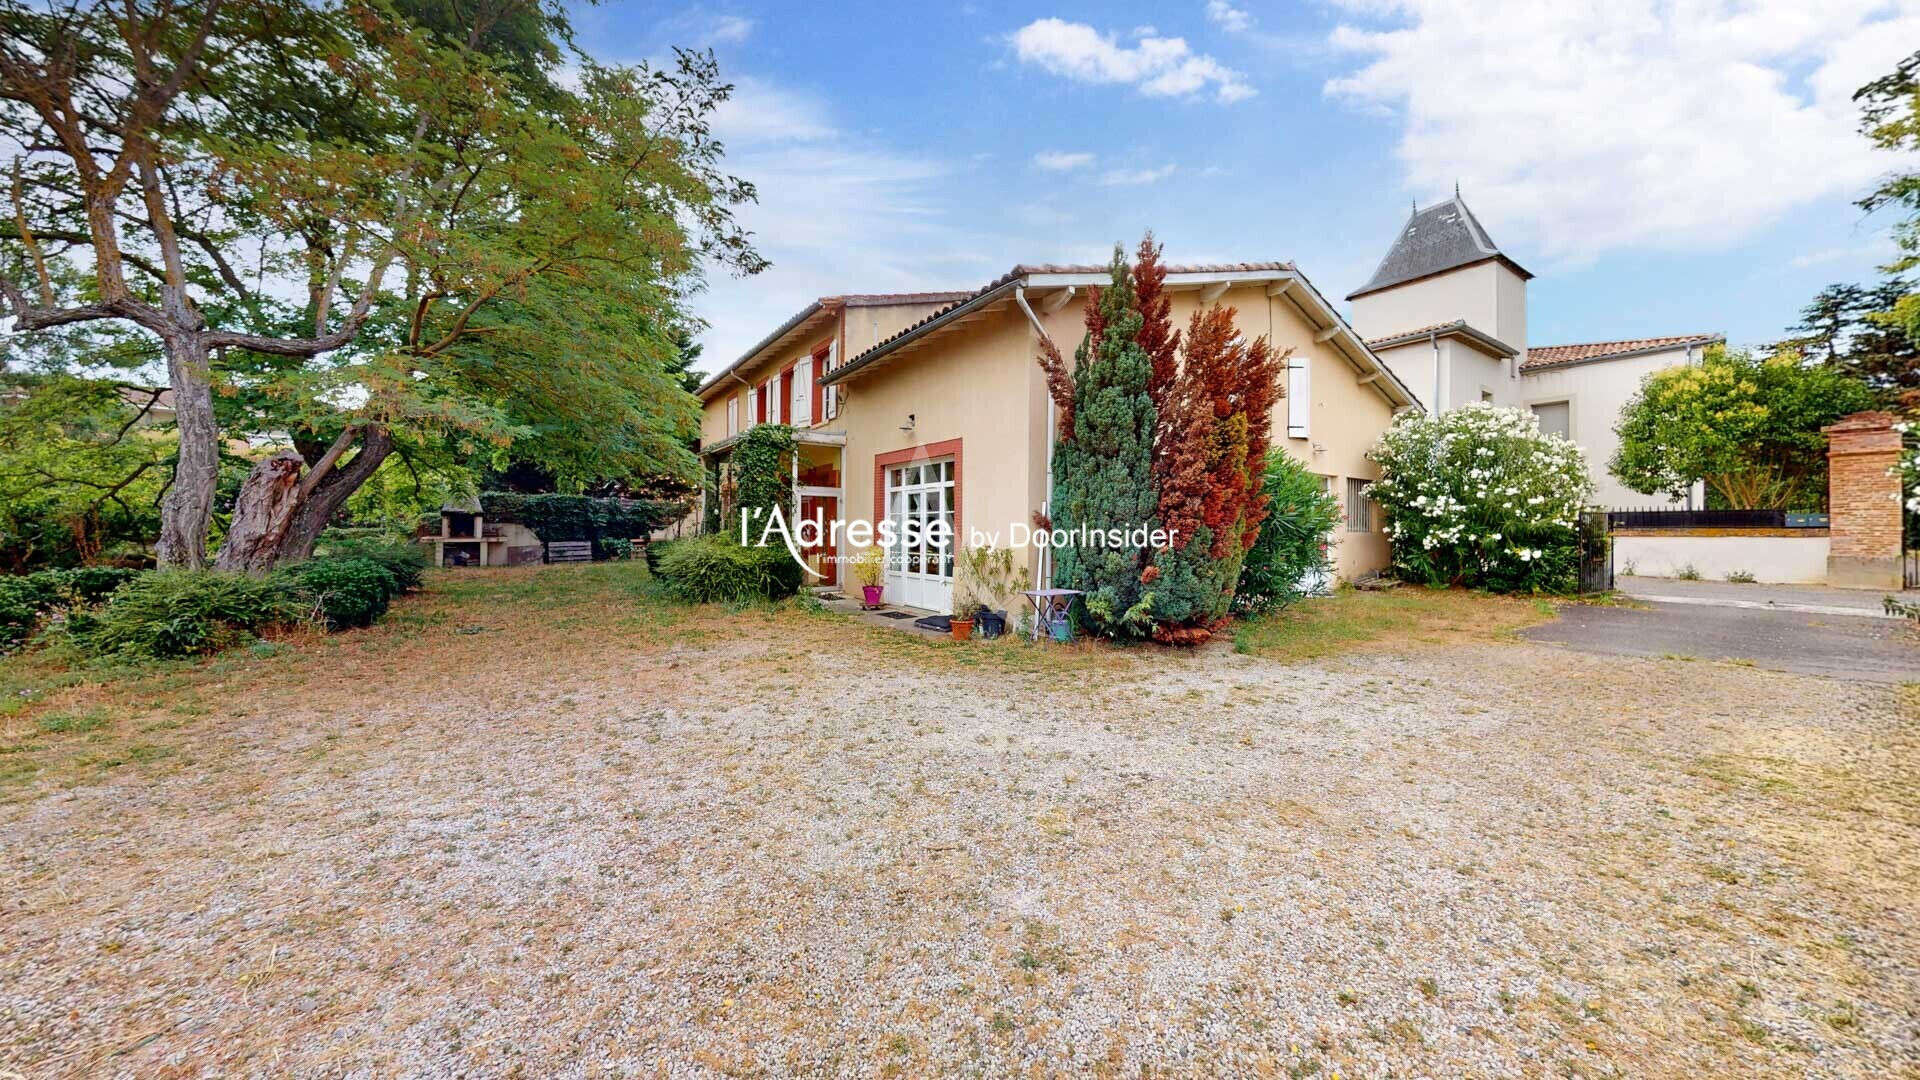 Vente Maison 230 m² à Auzeville Tolosane 522 950 €